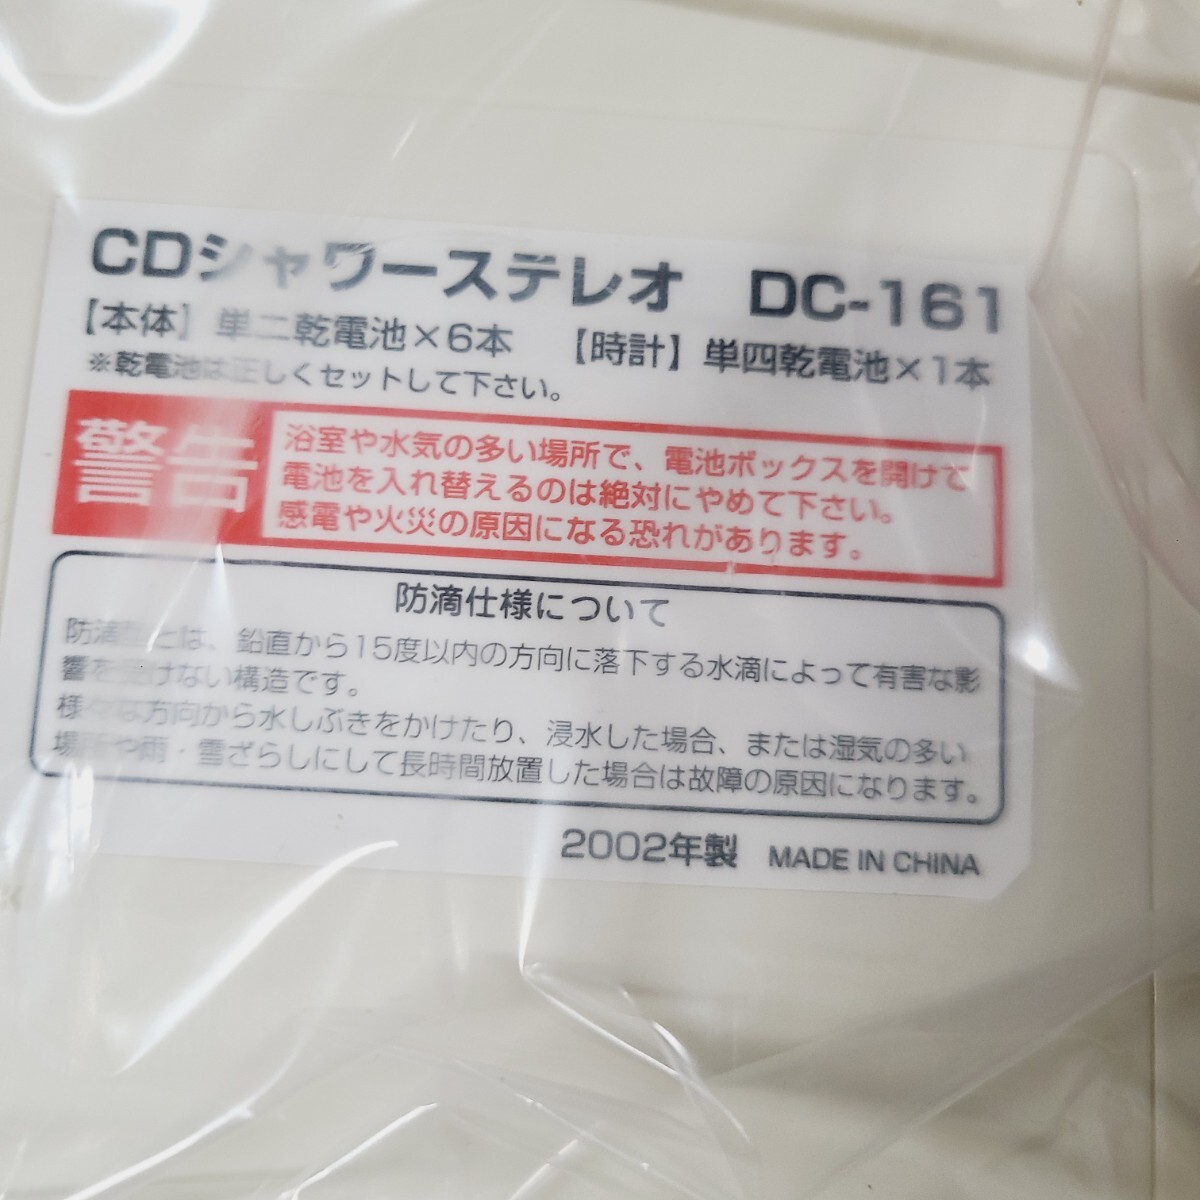 0327** не использовался CD душ стерео DC-161 портативный CD плеер **